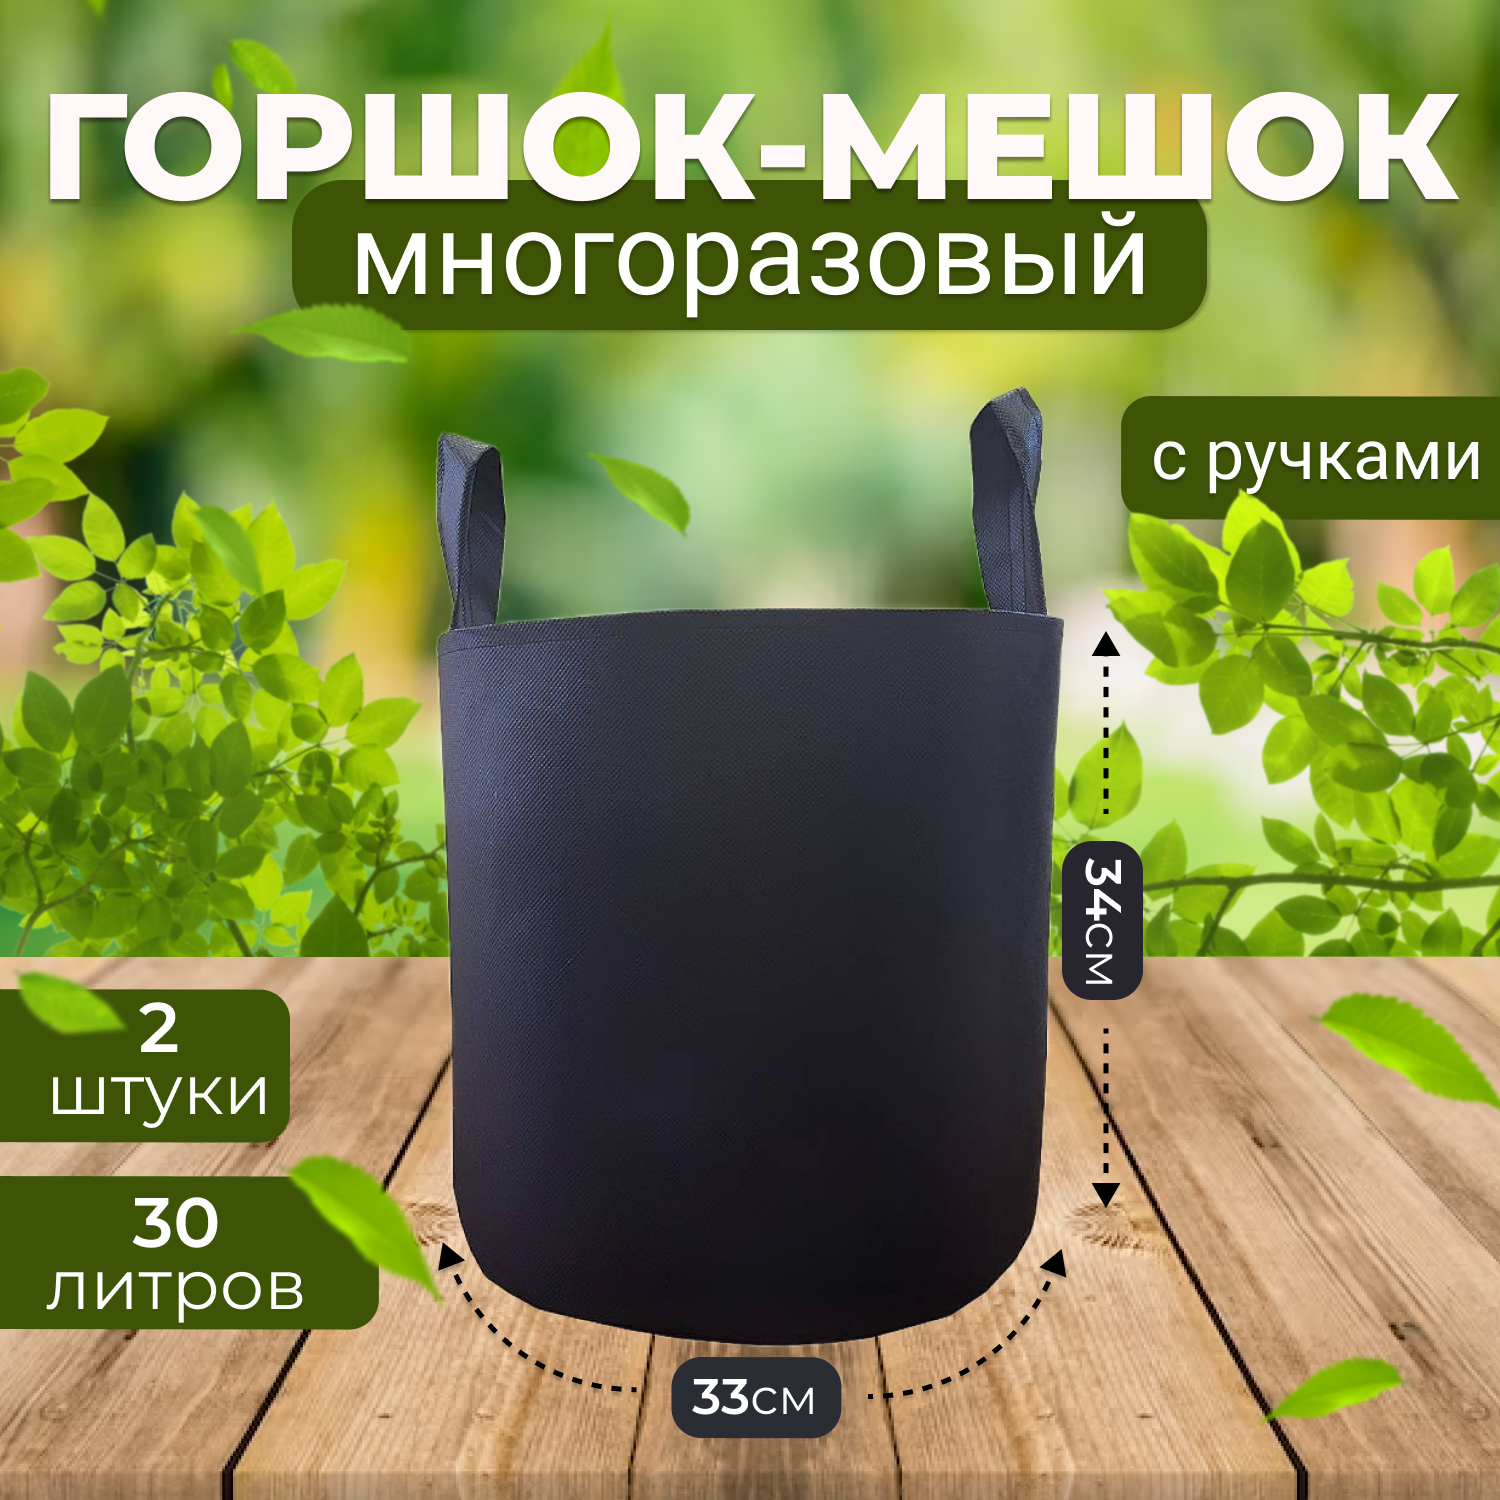 Тканевый горшок для растений из спанбонда Grower Green 30_litrov-G_2 с ручками 30л., 2шт.